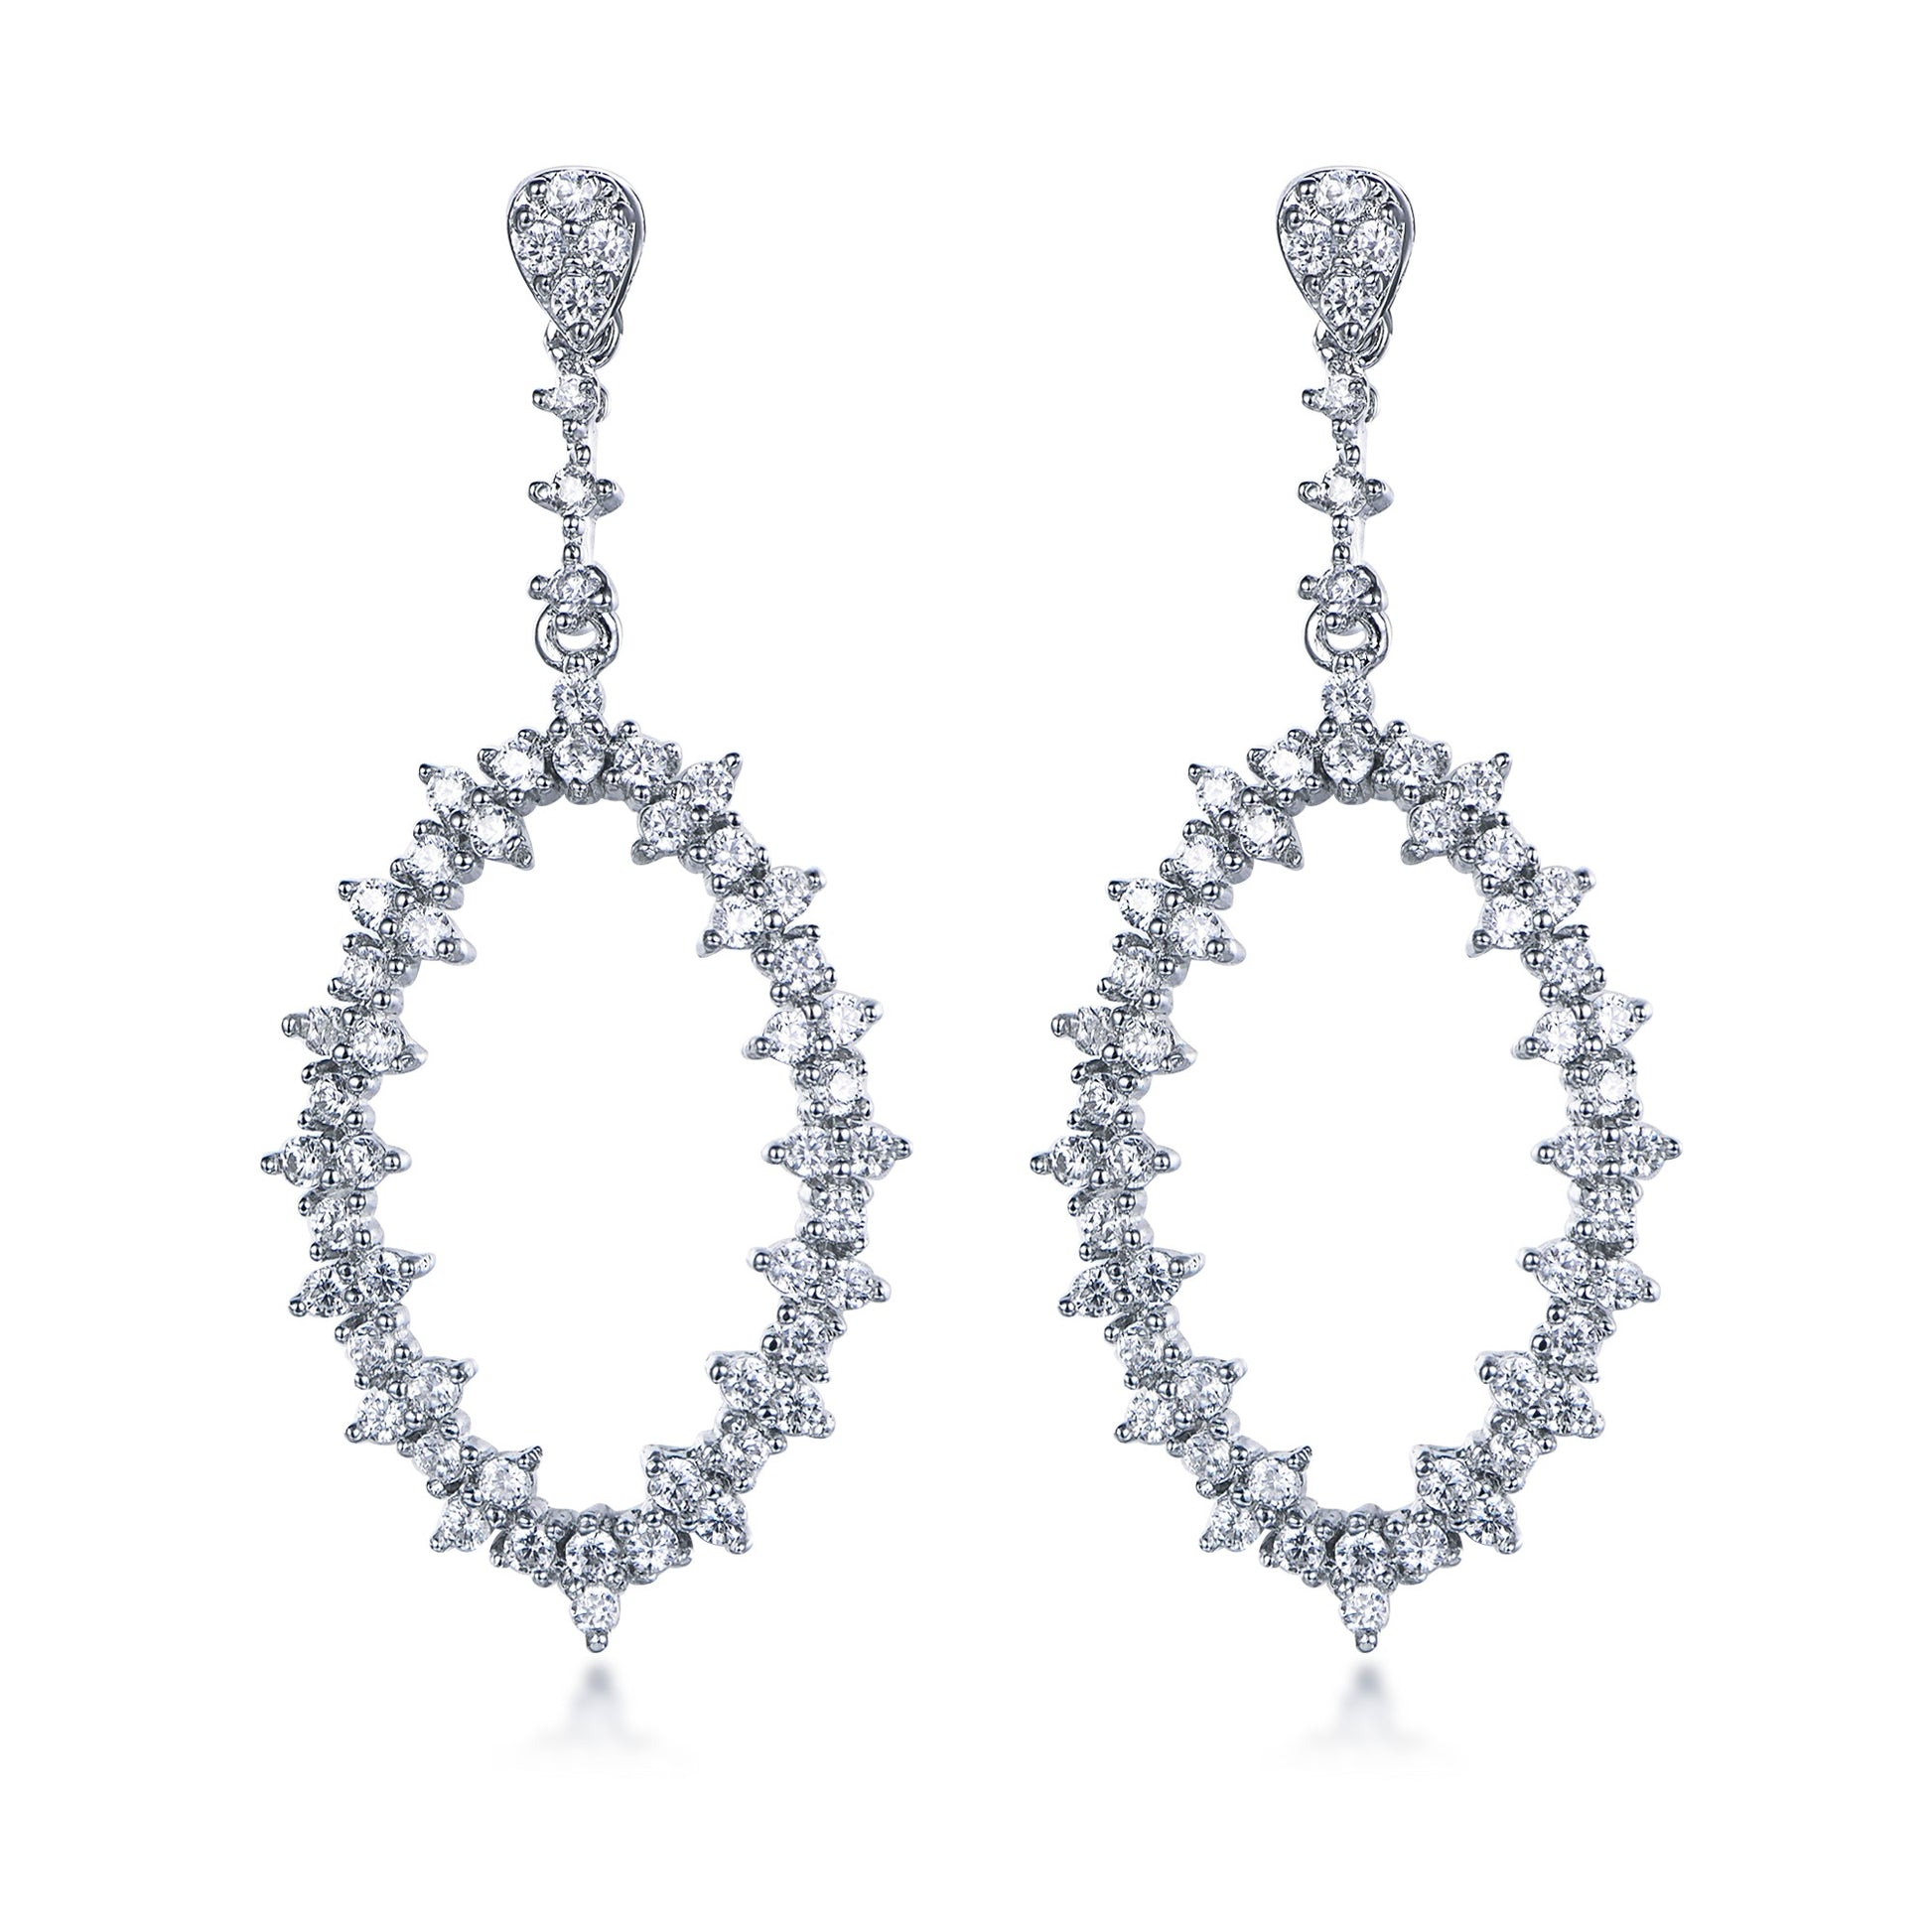 Sterling Silver CZ Marquis Earrings - HK Jewels